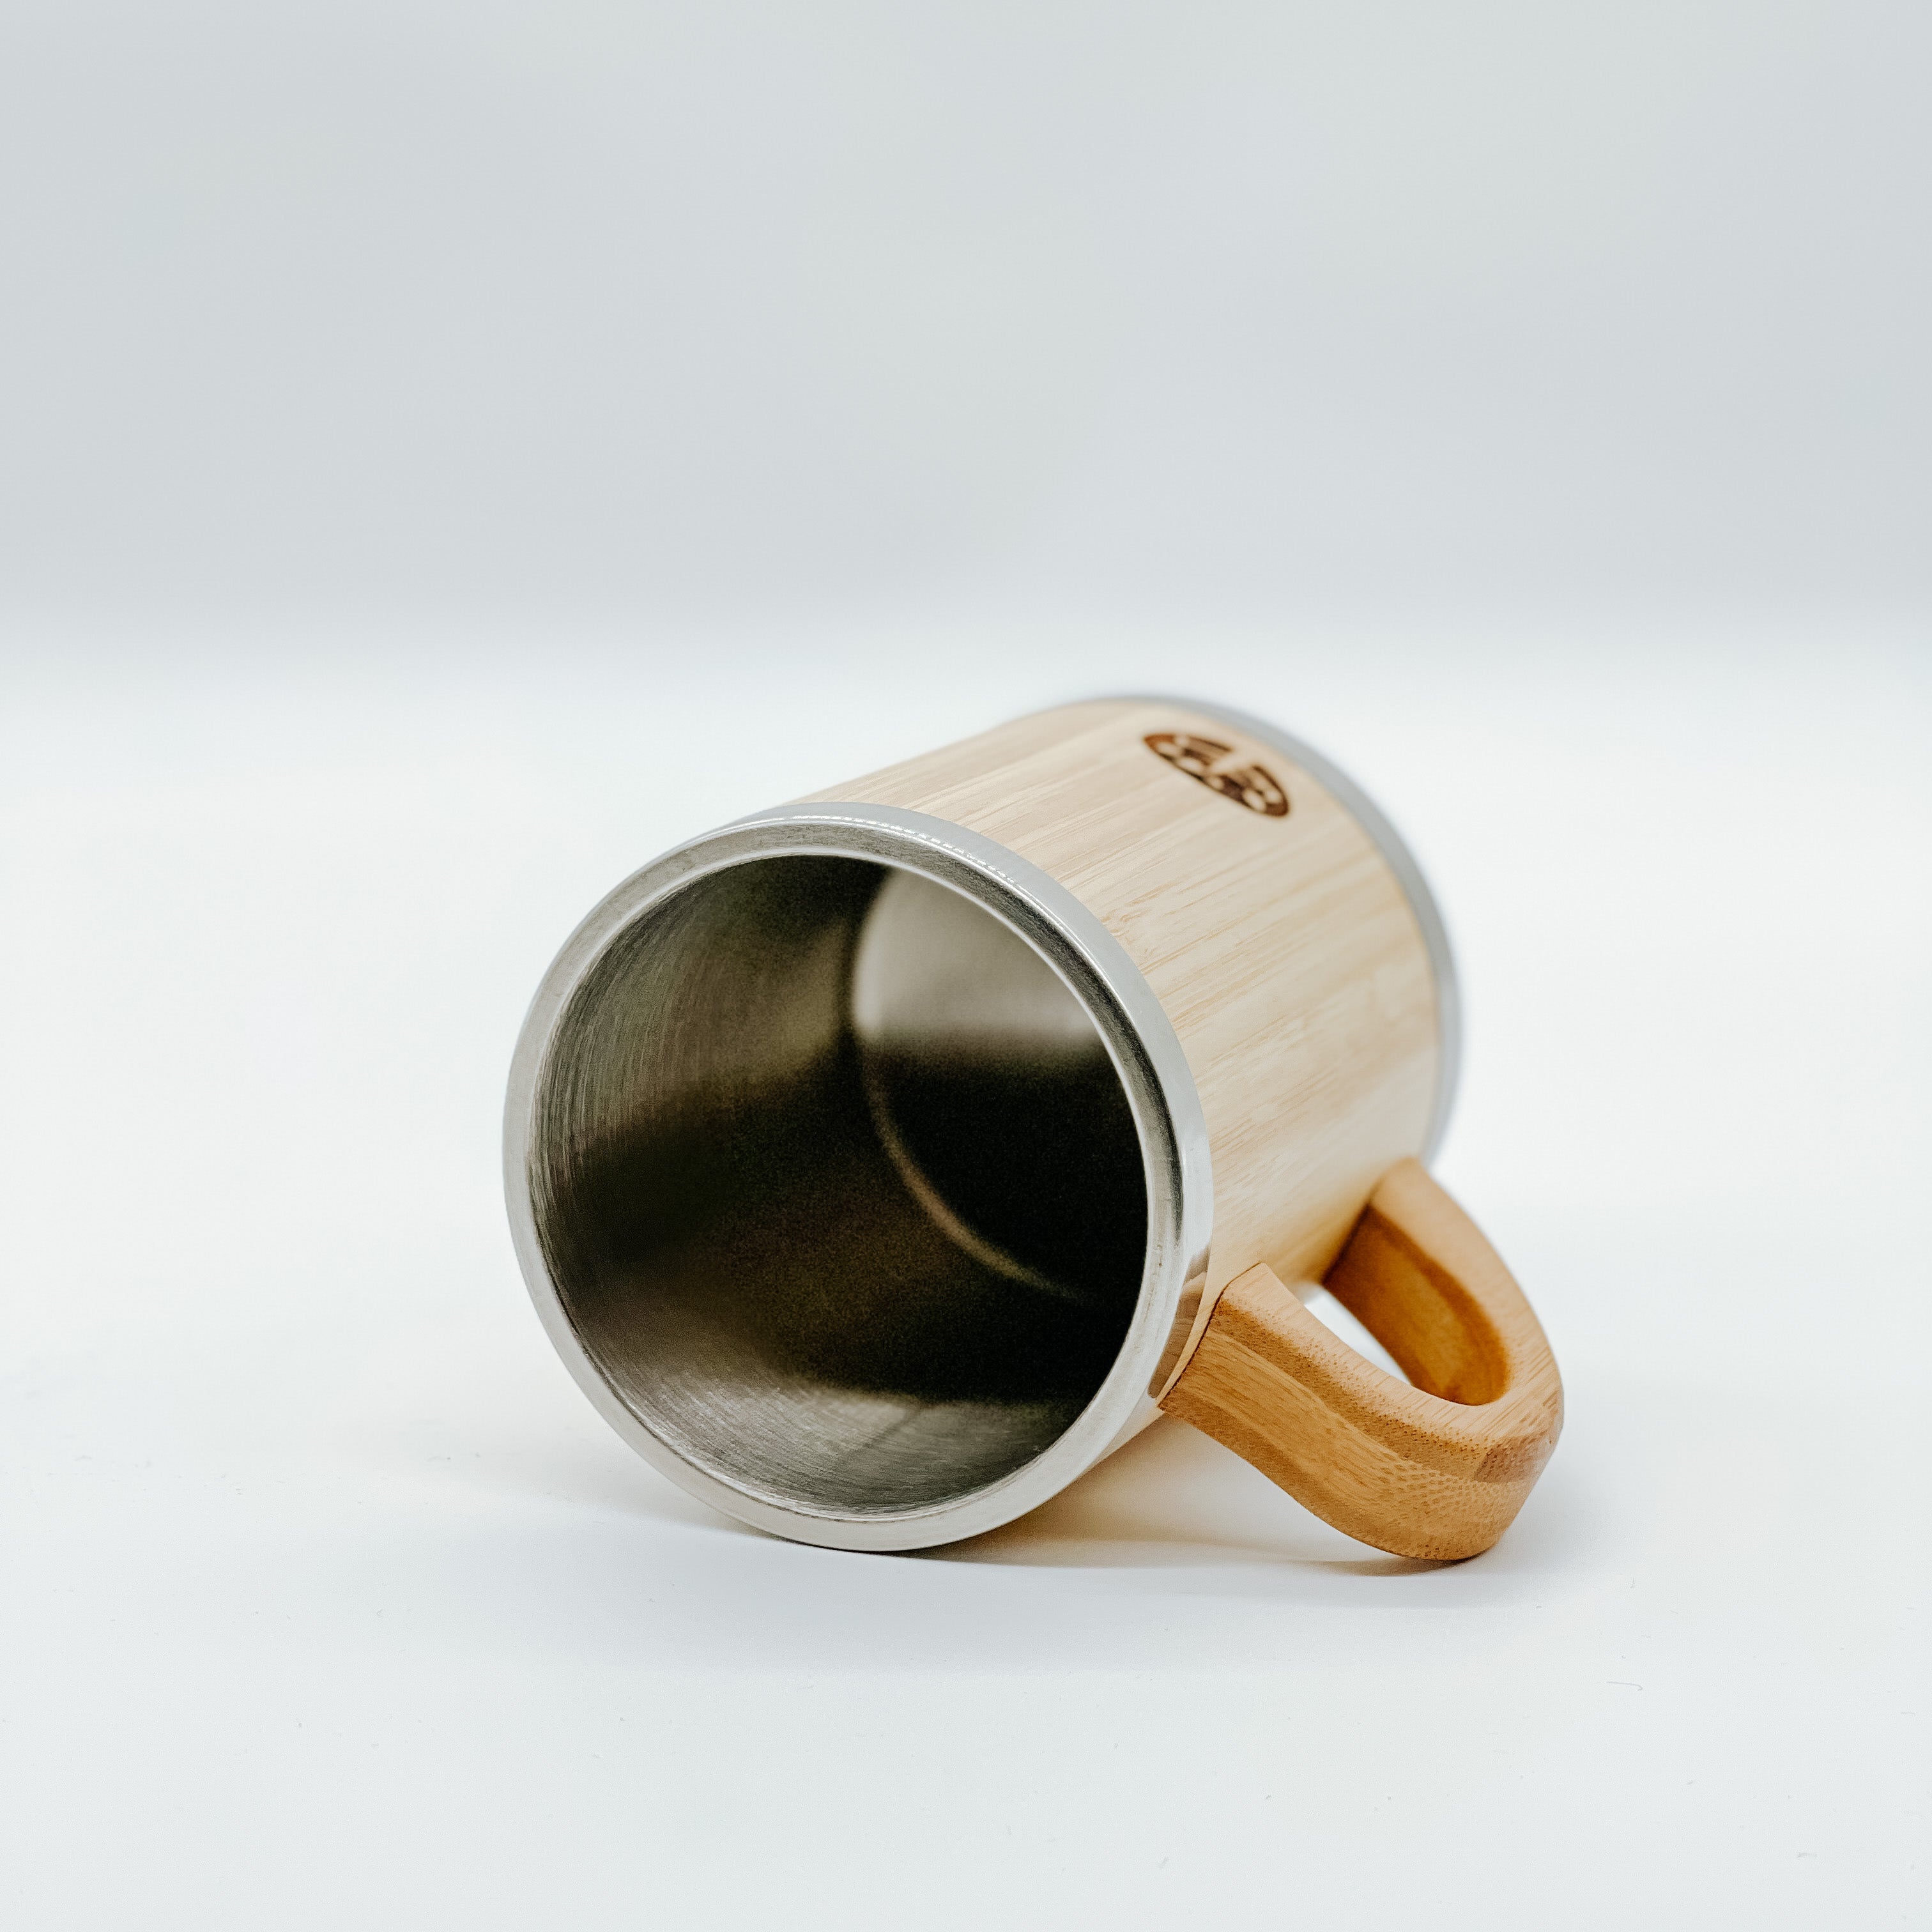 Bamboo Coffee Mug 300ml